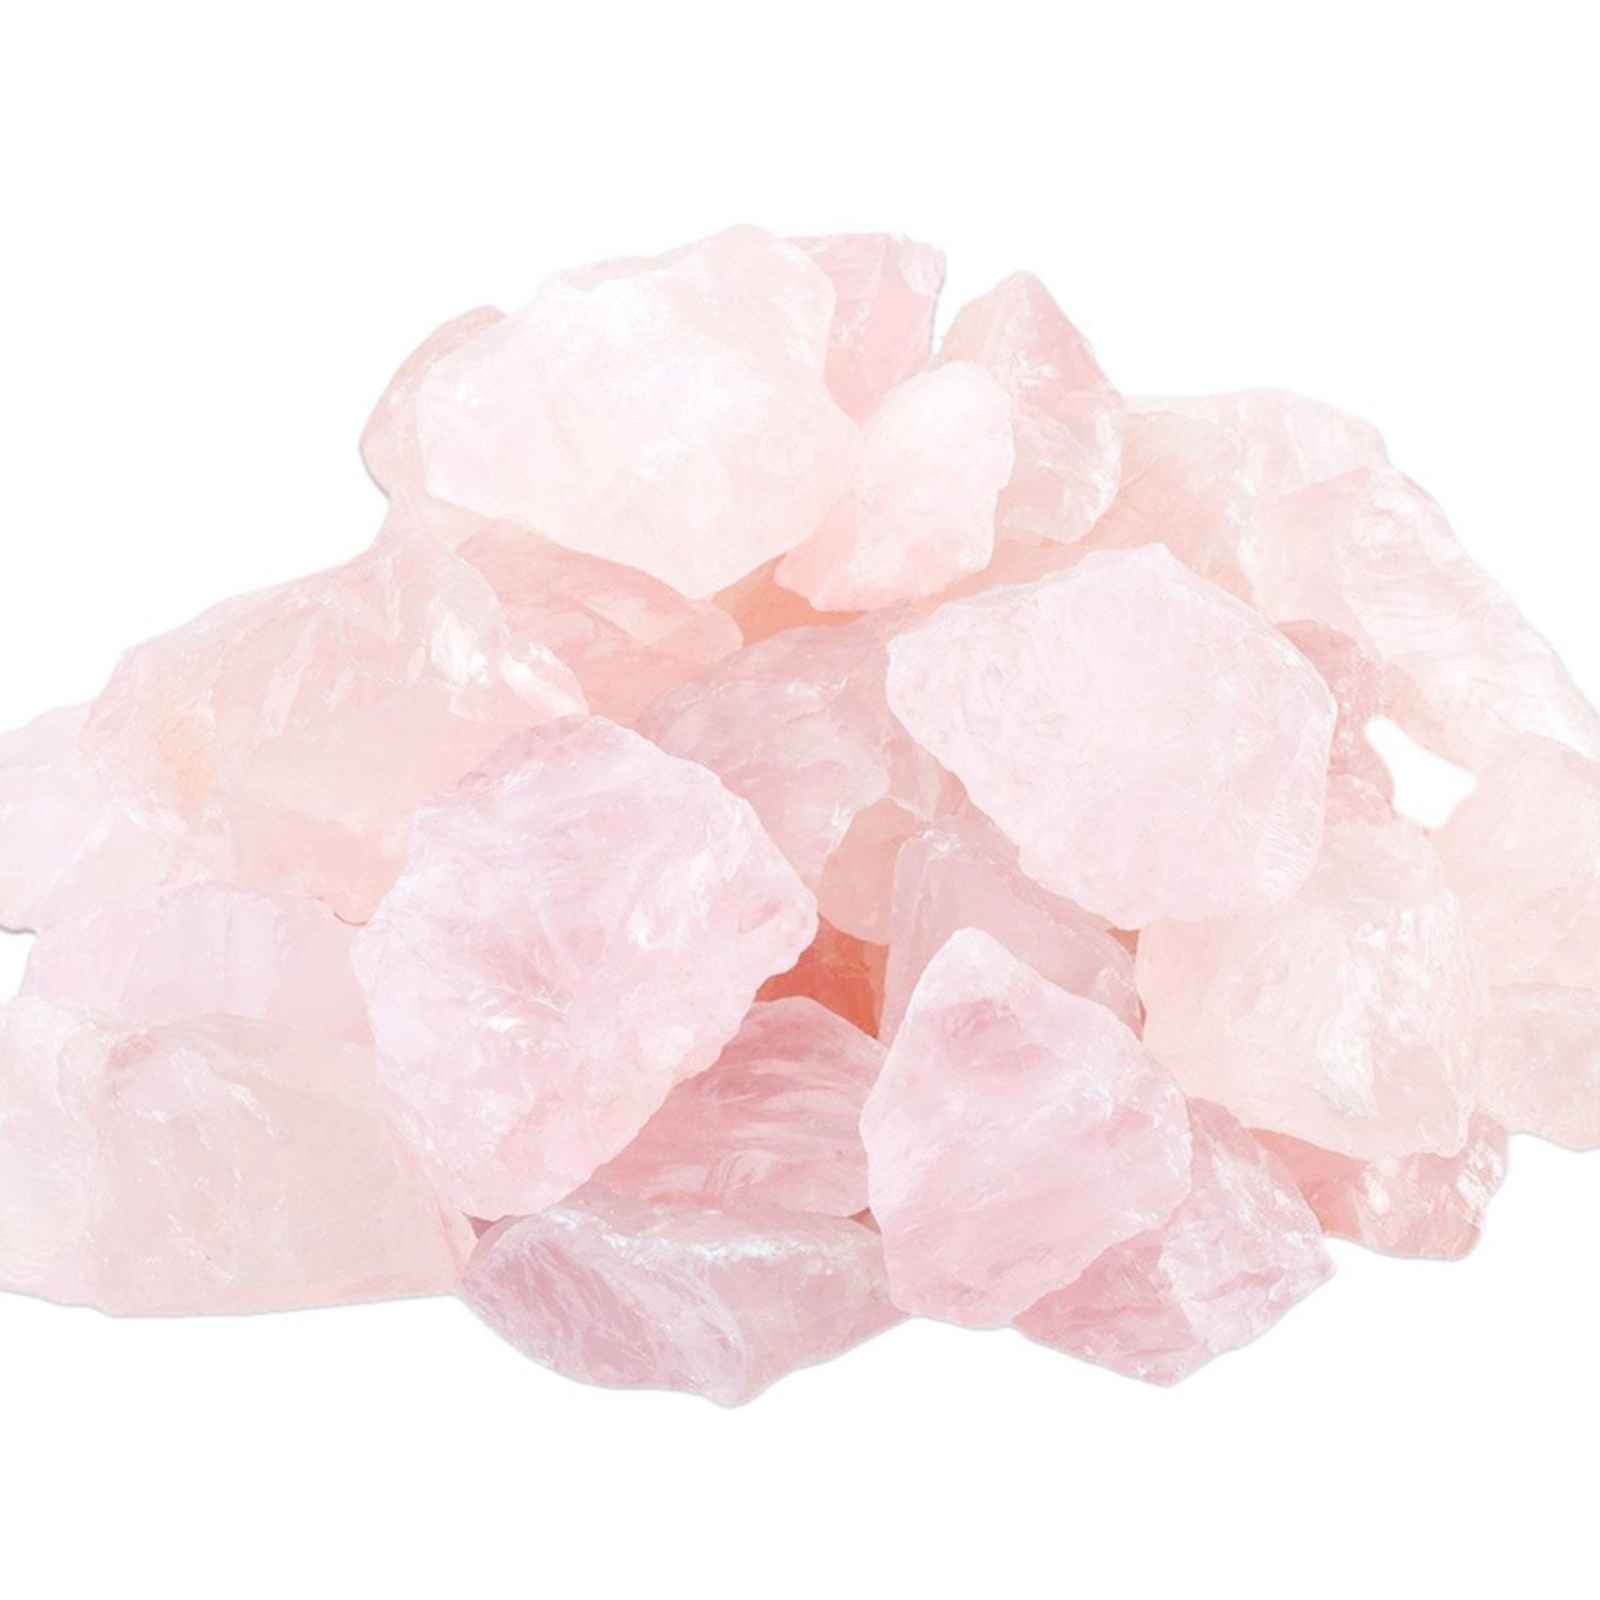 A Tumbled Rose Quartz crystal